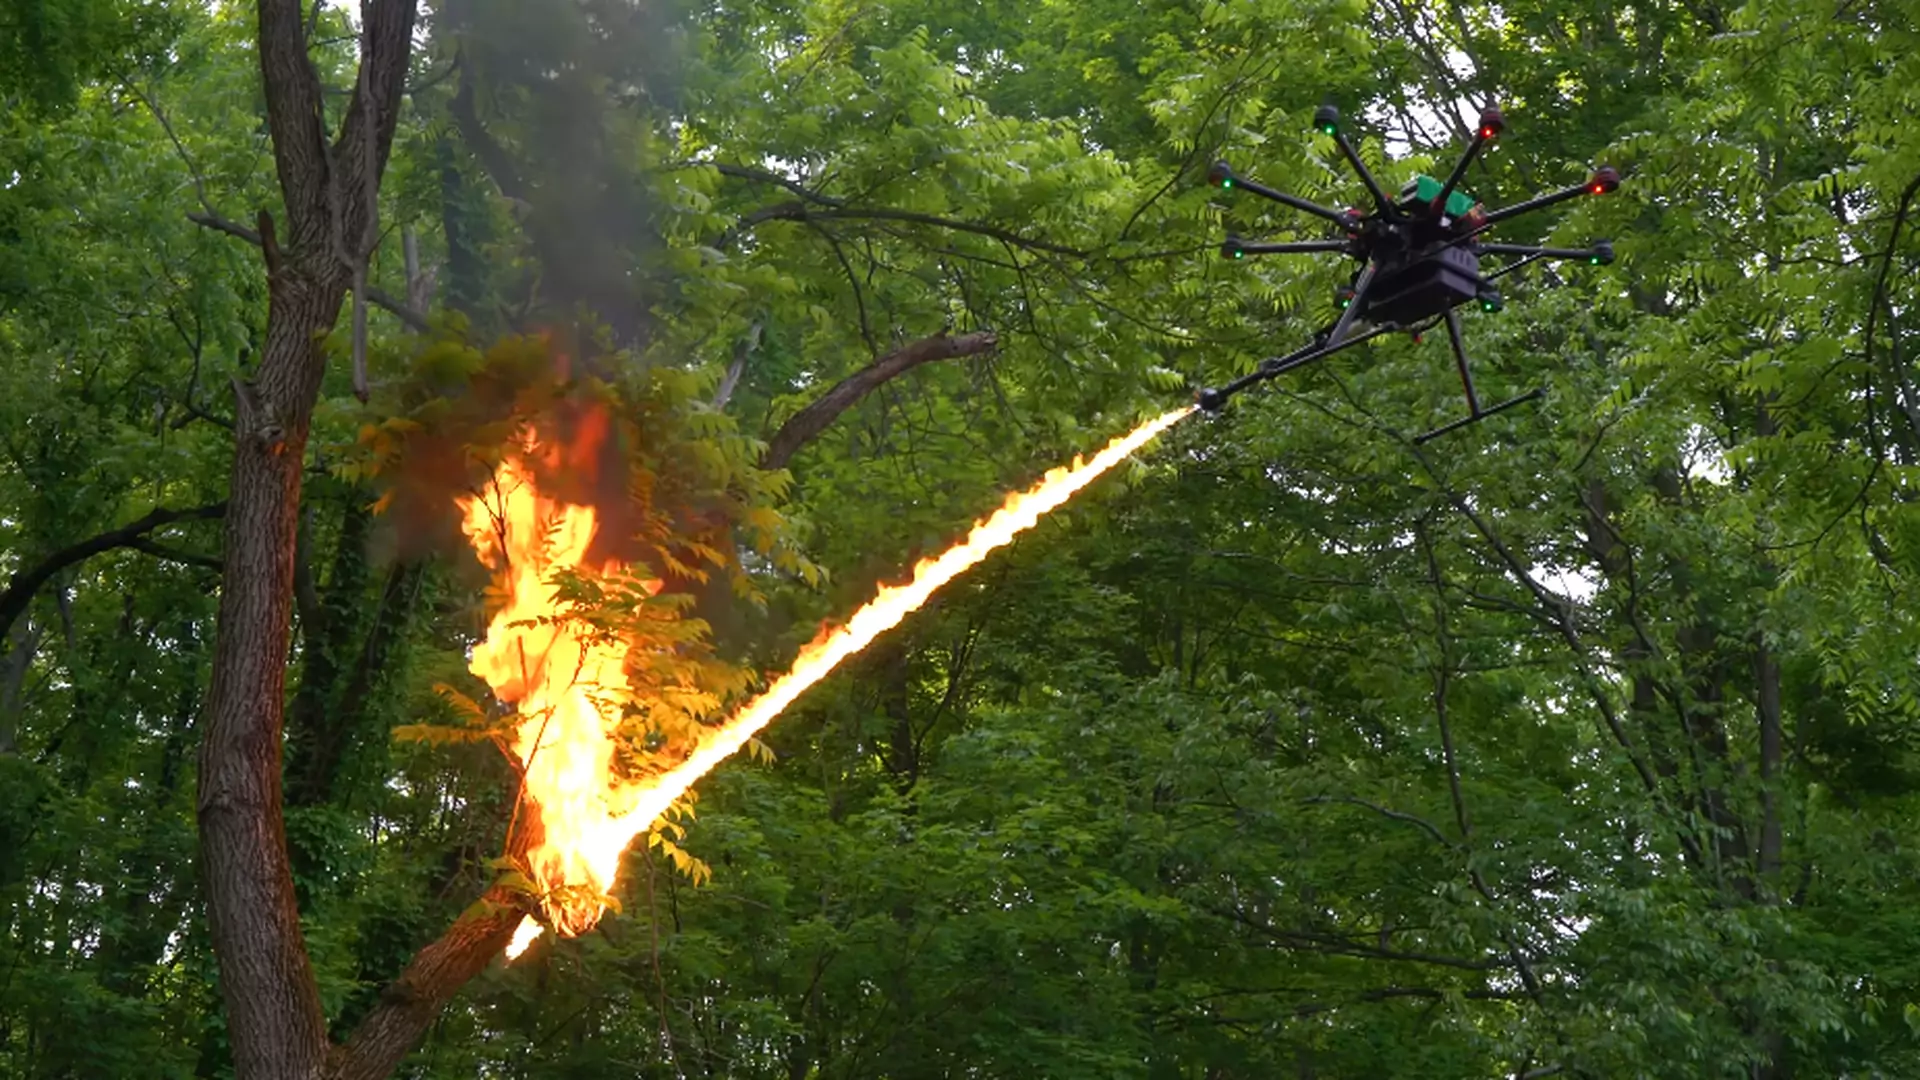 Powstał latający miotacz ognia sprzedawany w sieci. Może zabić, ale nie jest uznawany za broń